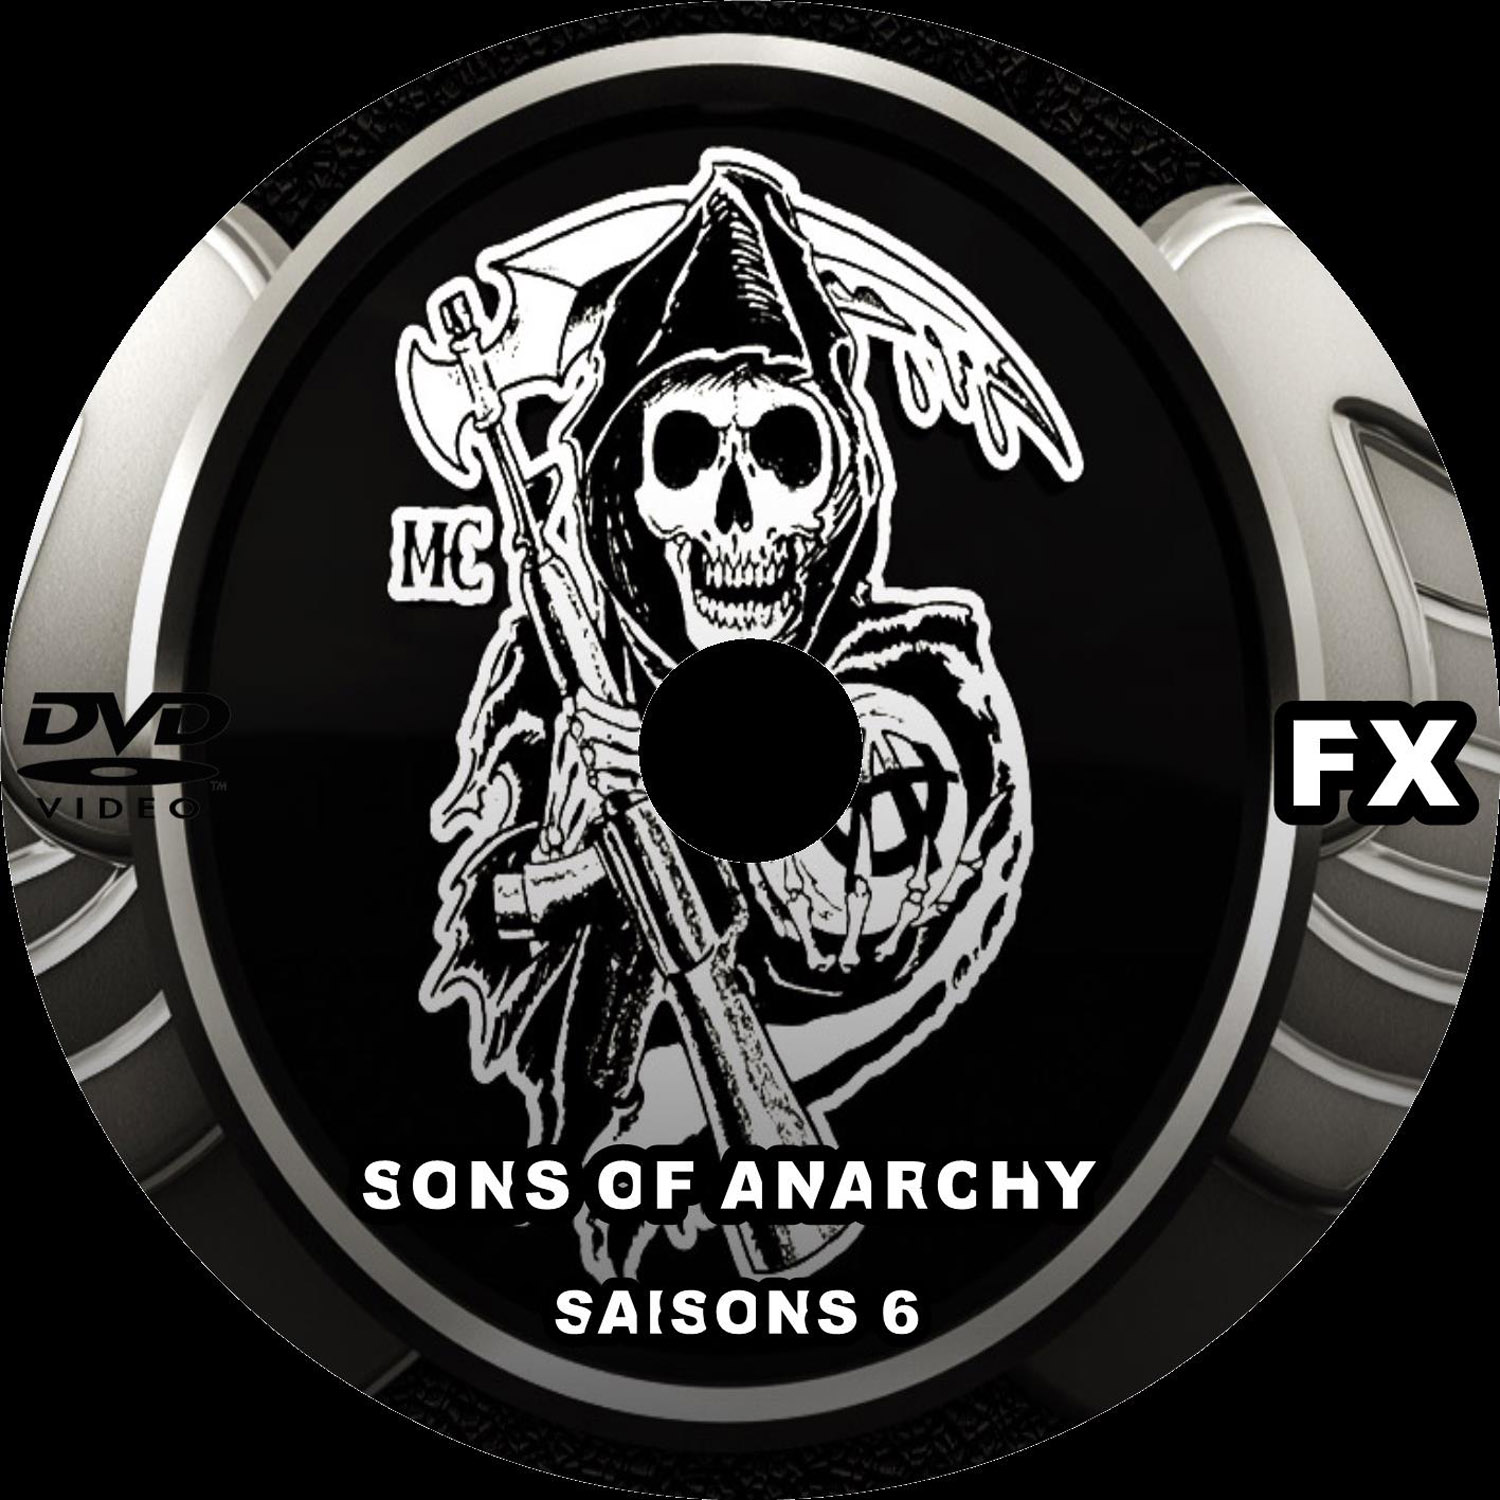 Sons of anarchy saison 6 custom